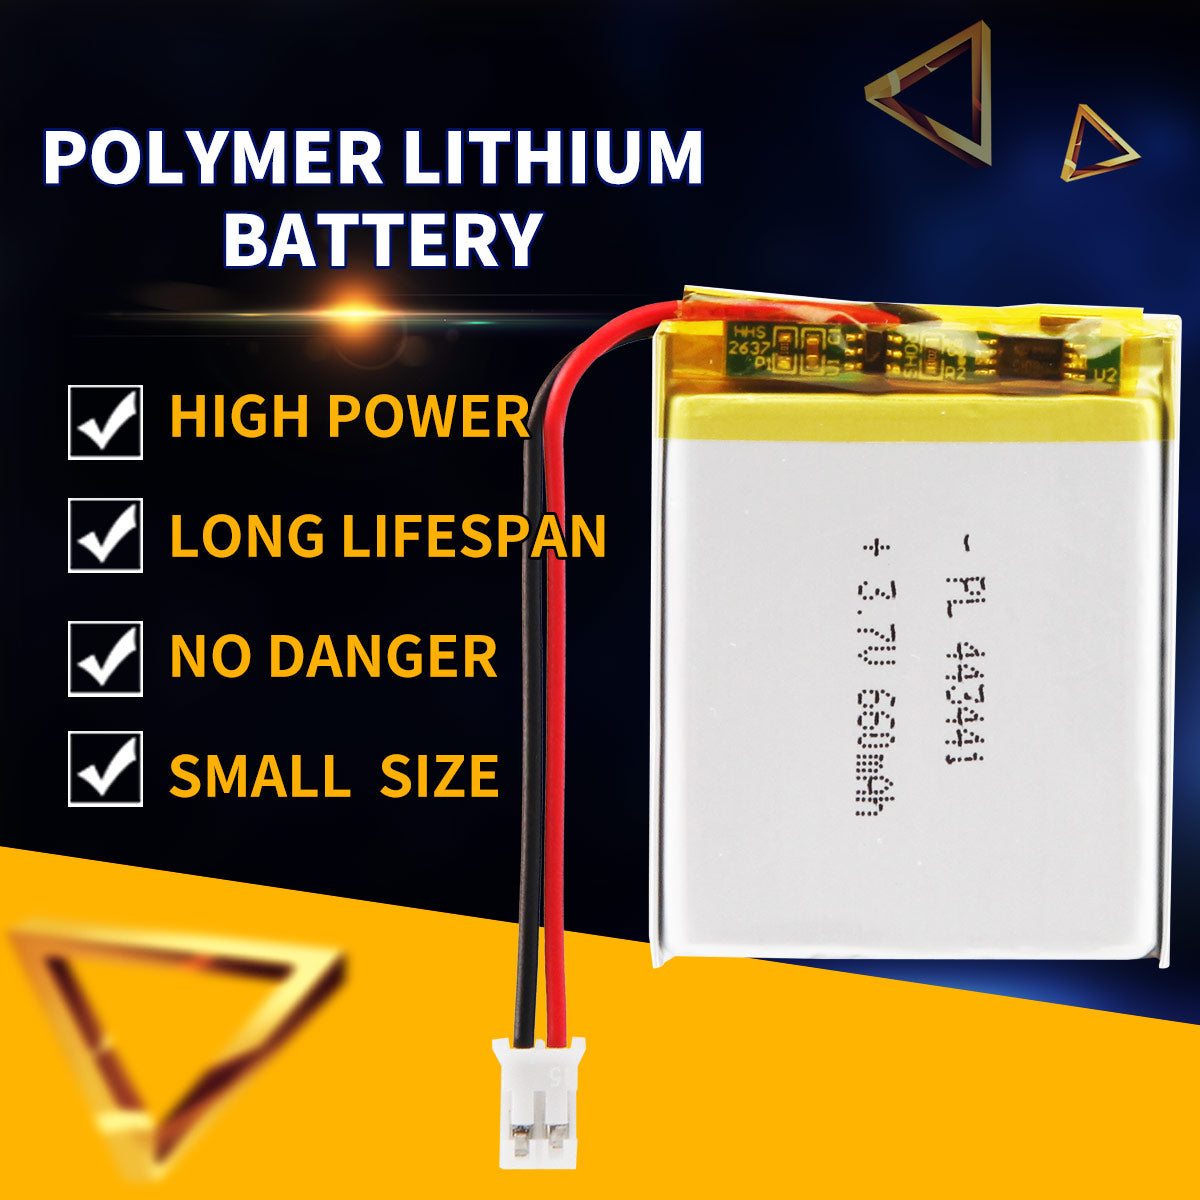 3.7V 660mAh 443441 Batterie Lithium Polymère Rechargeable Longueur 43mm